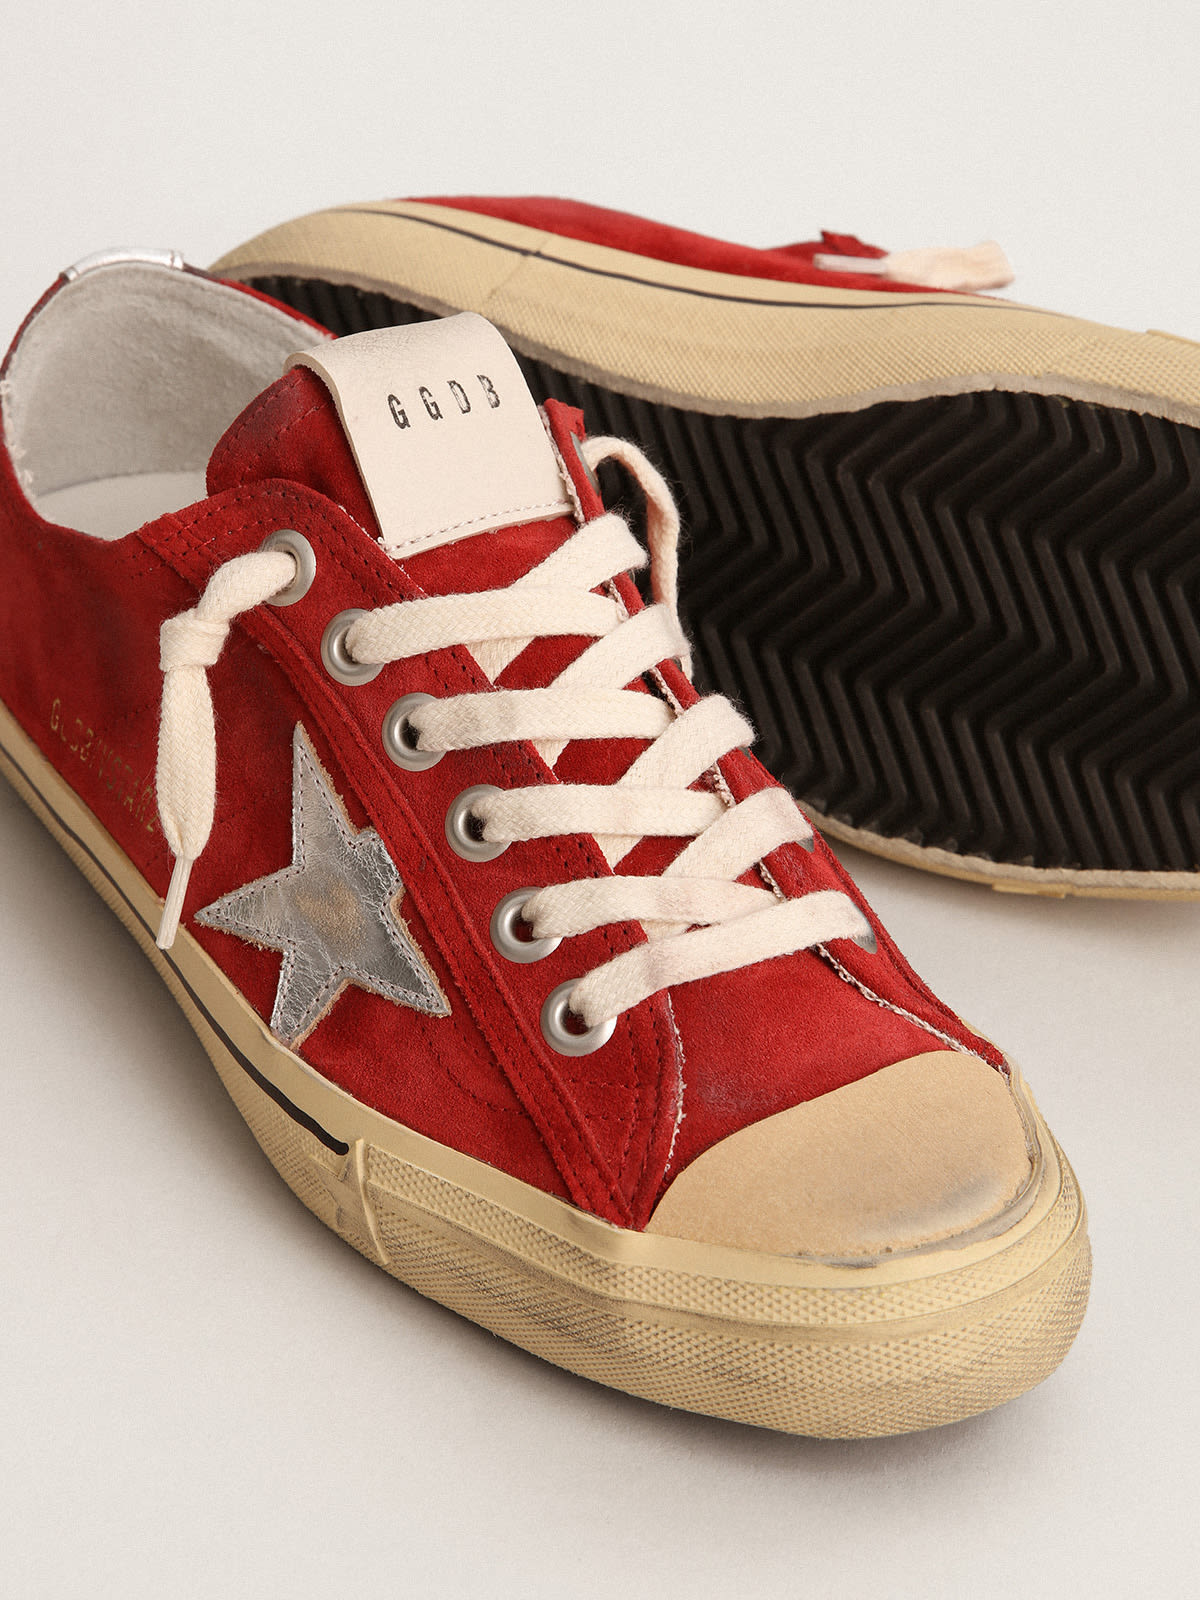 Golden Goose - Sneakers V-Star LTD en daim rouge foncé avec étoile en cuir lamé argenté in 